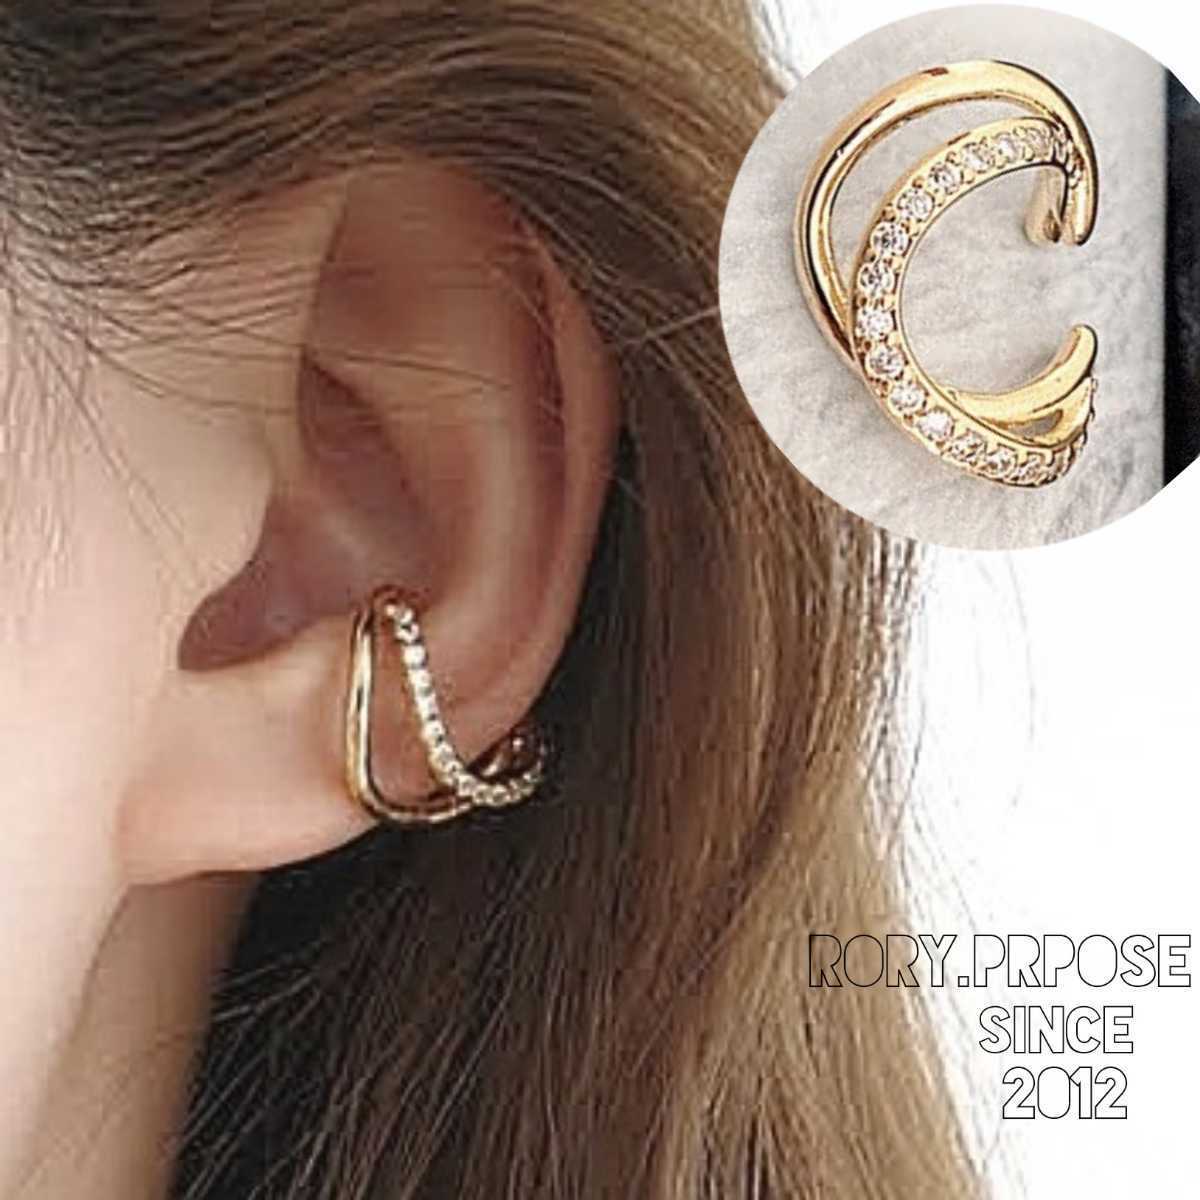 color Gold ушные каффы одежда кольцо iya серьги-кольца ушной зажим Корея аксессуары циркон diamond 